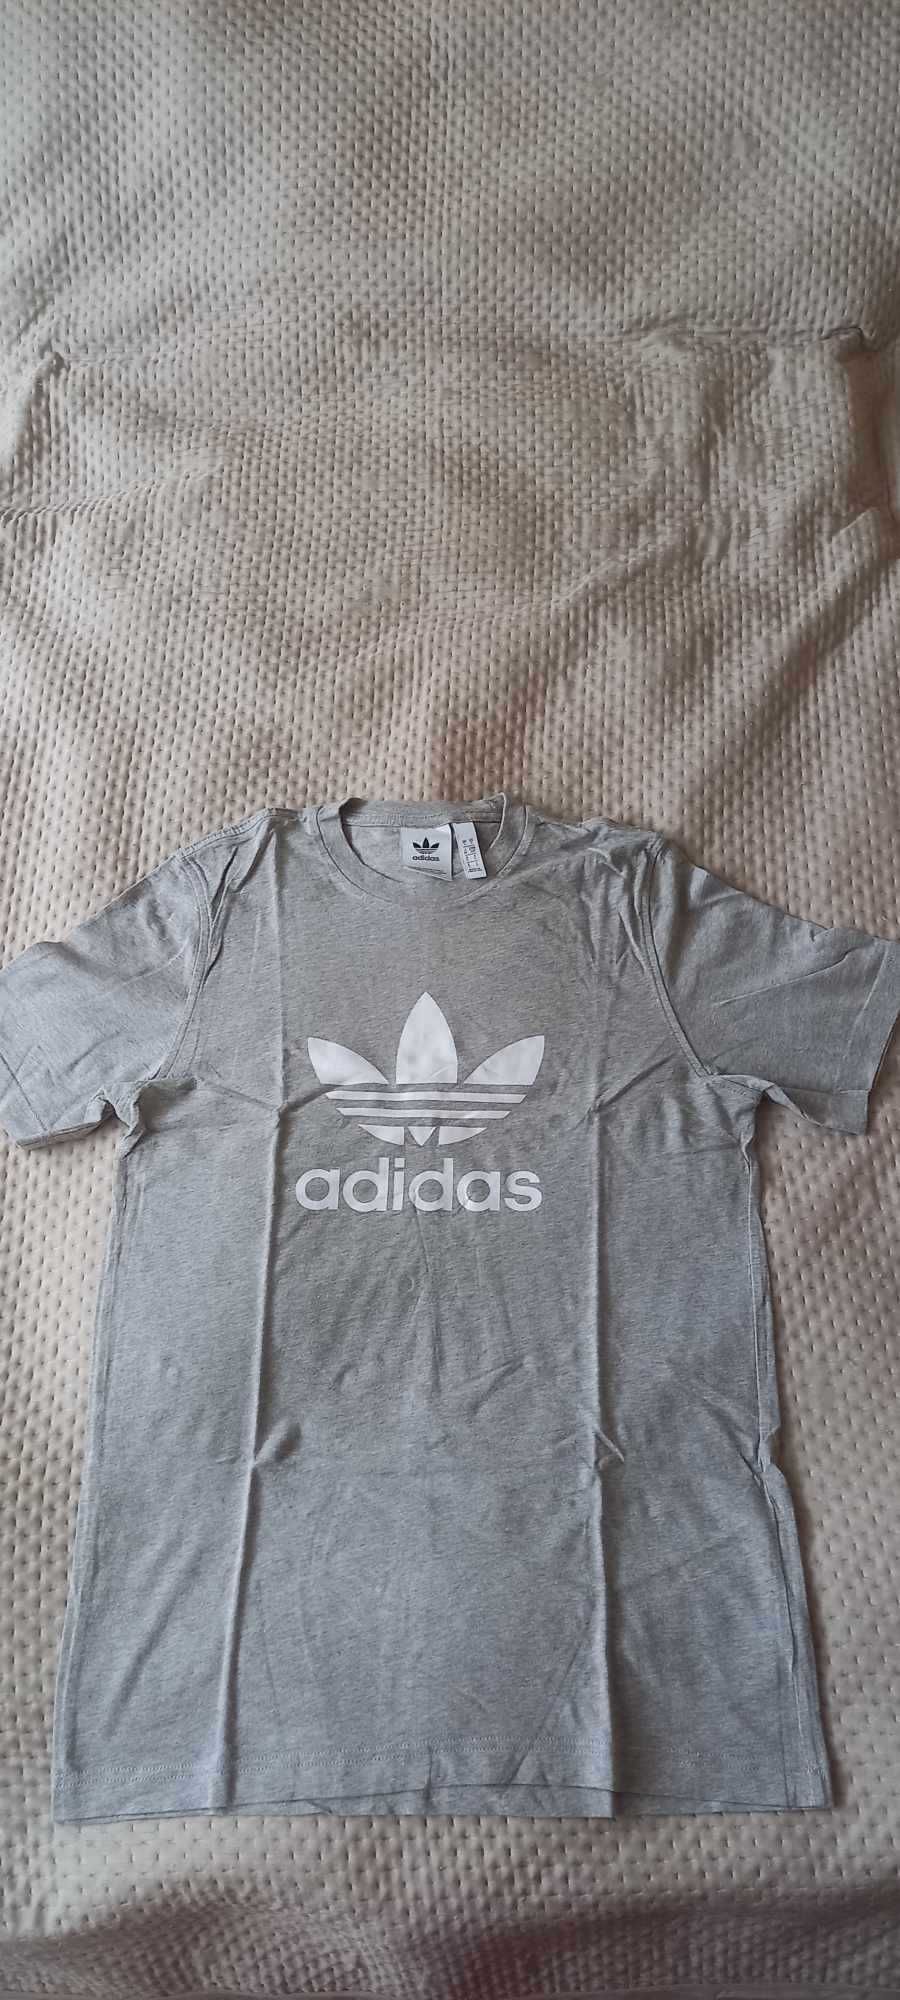 T-shirt męski Adidas  rozmiar S jak nowy !!